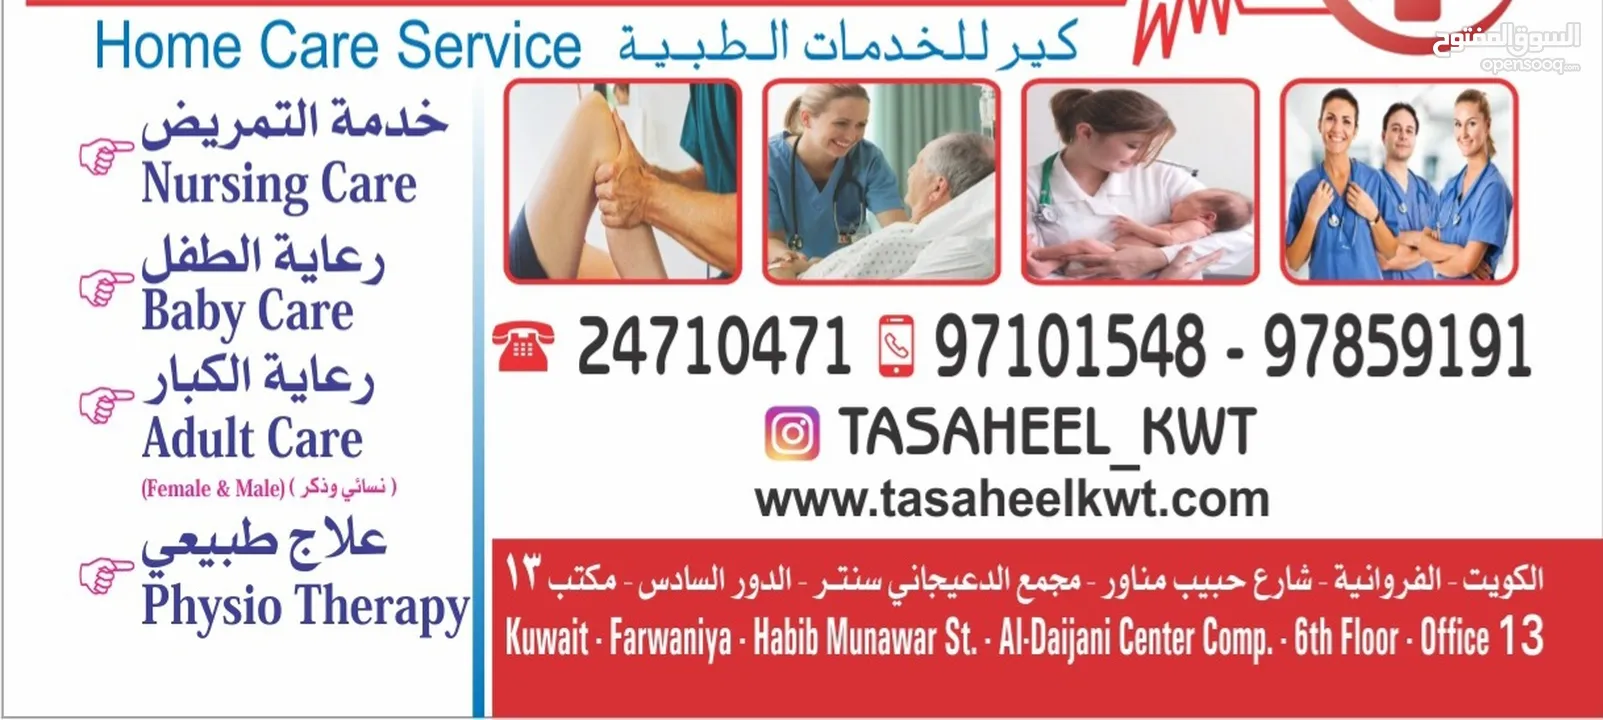 tasaheel medical services